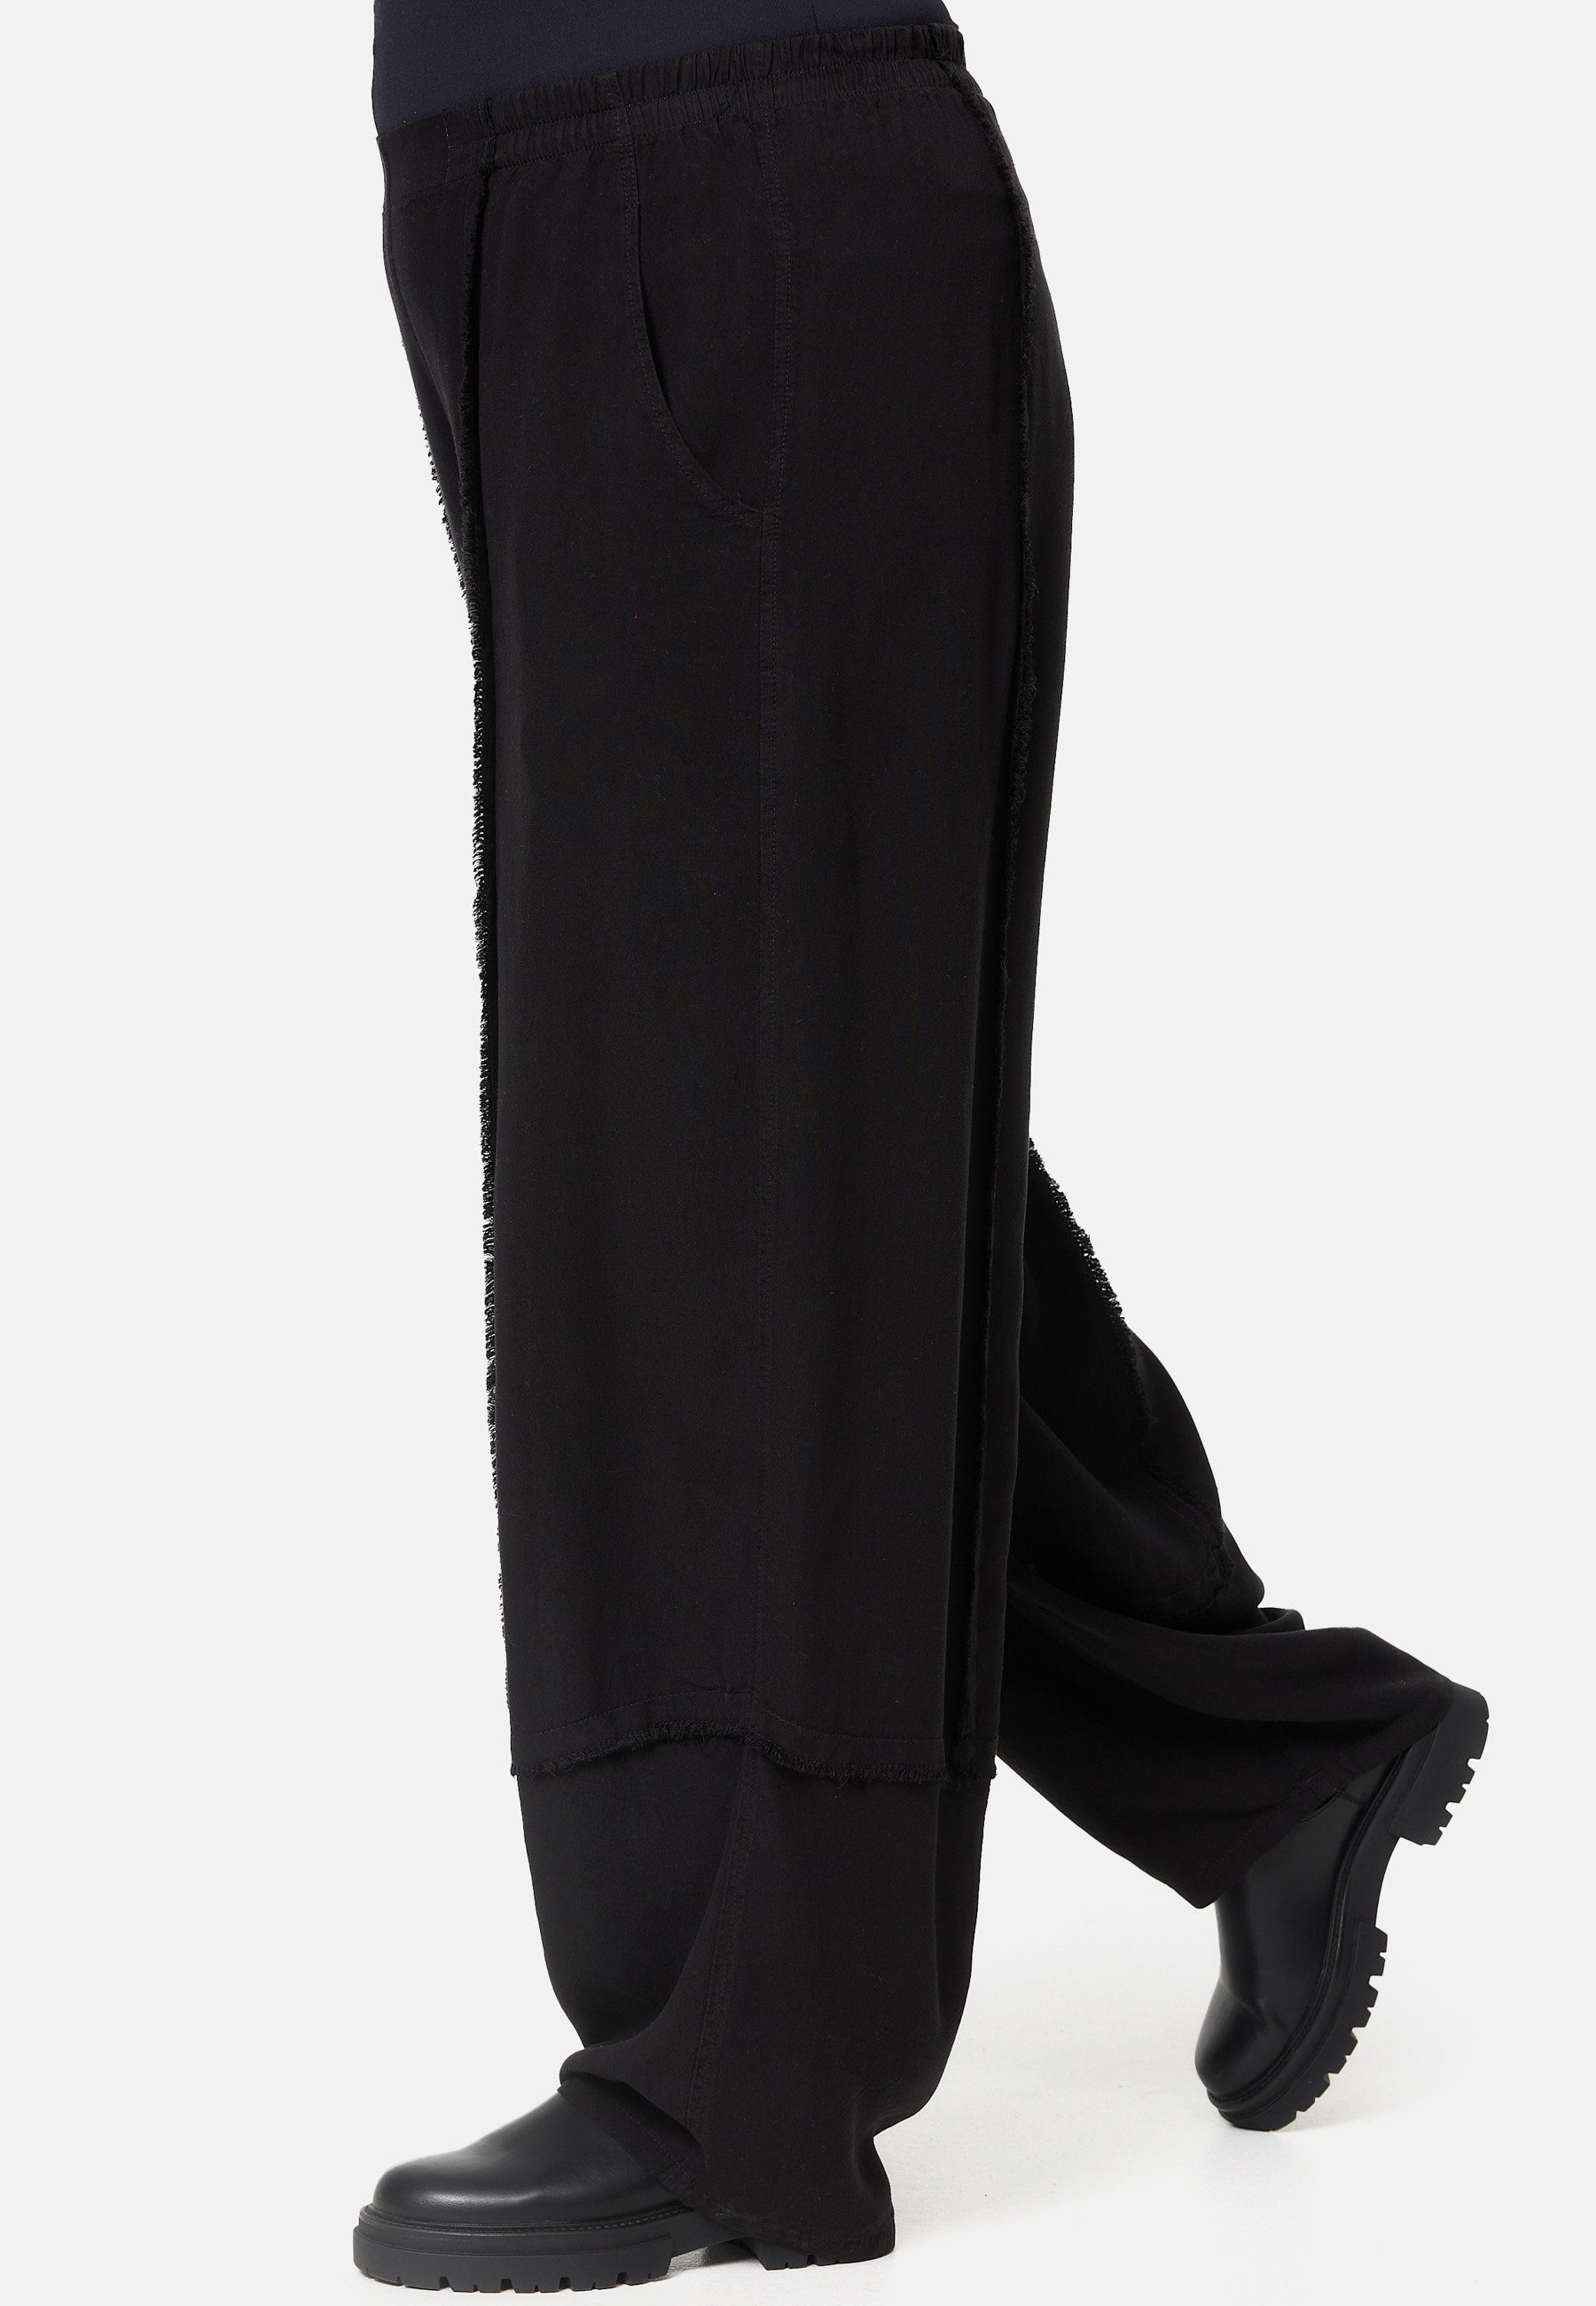 'Mila' Dehnbund-Hose im Kekoo Hose Viskose schwarz leichter aus Boho Stil